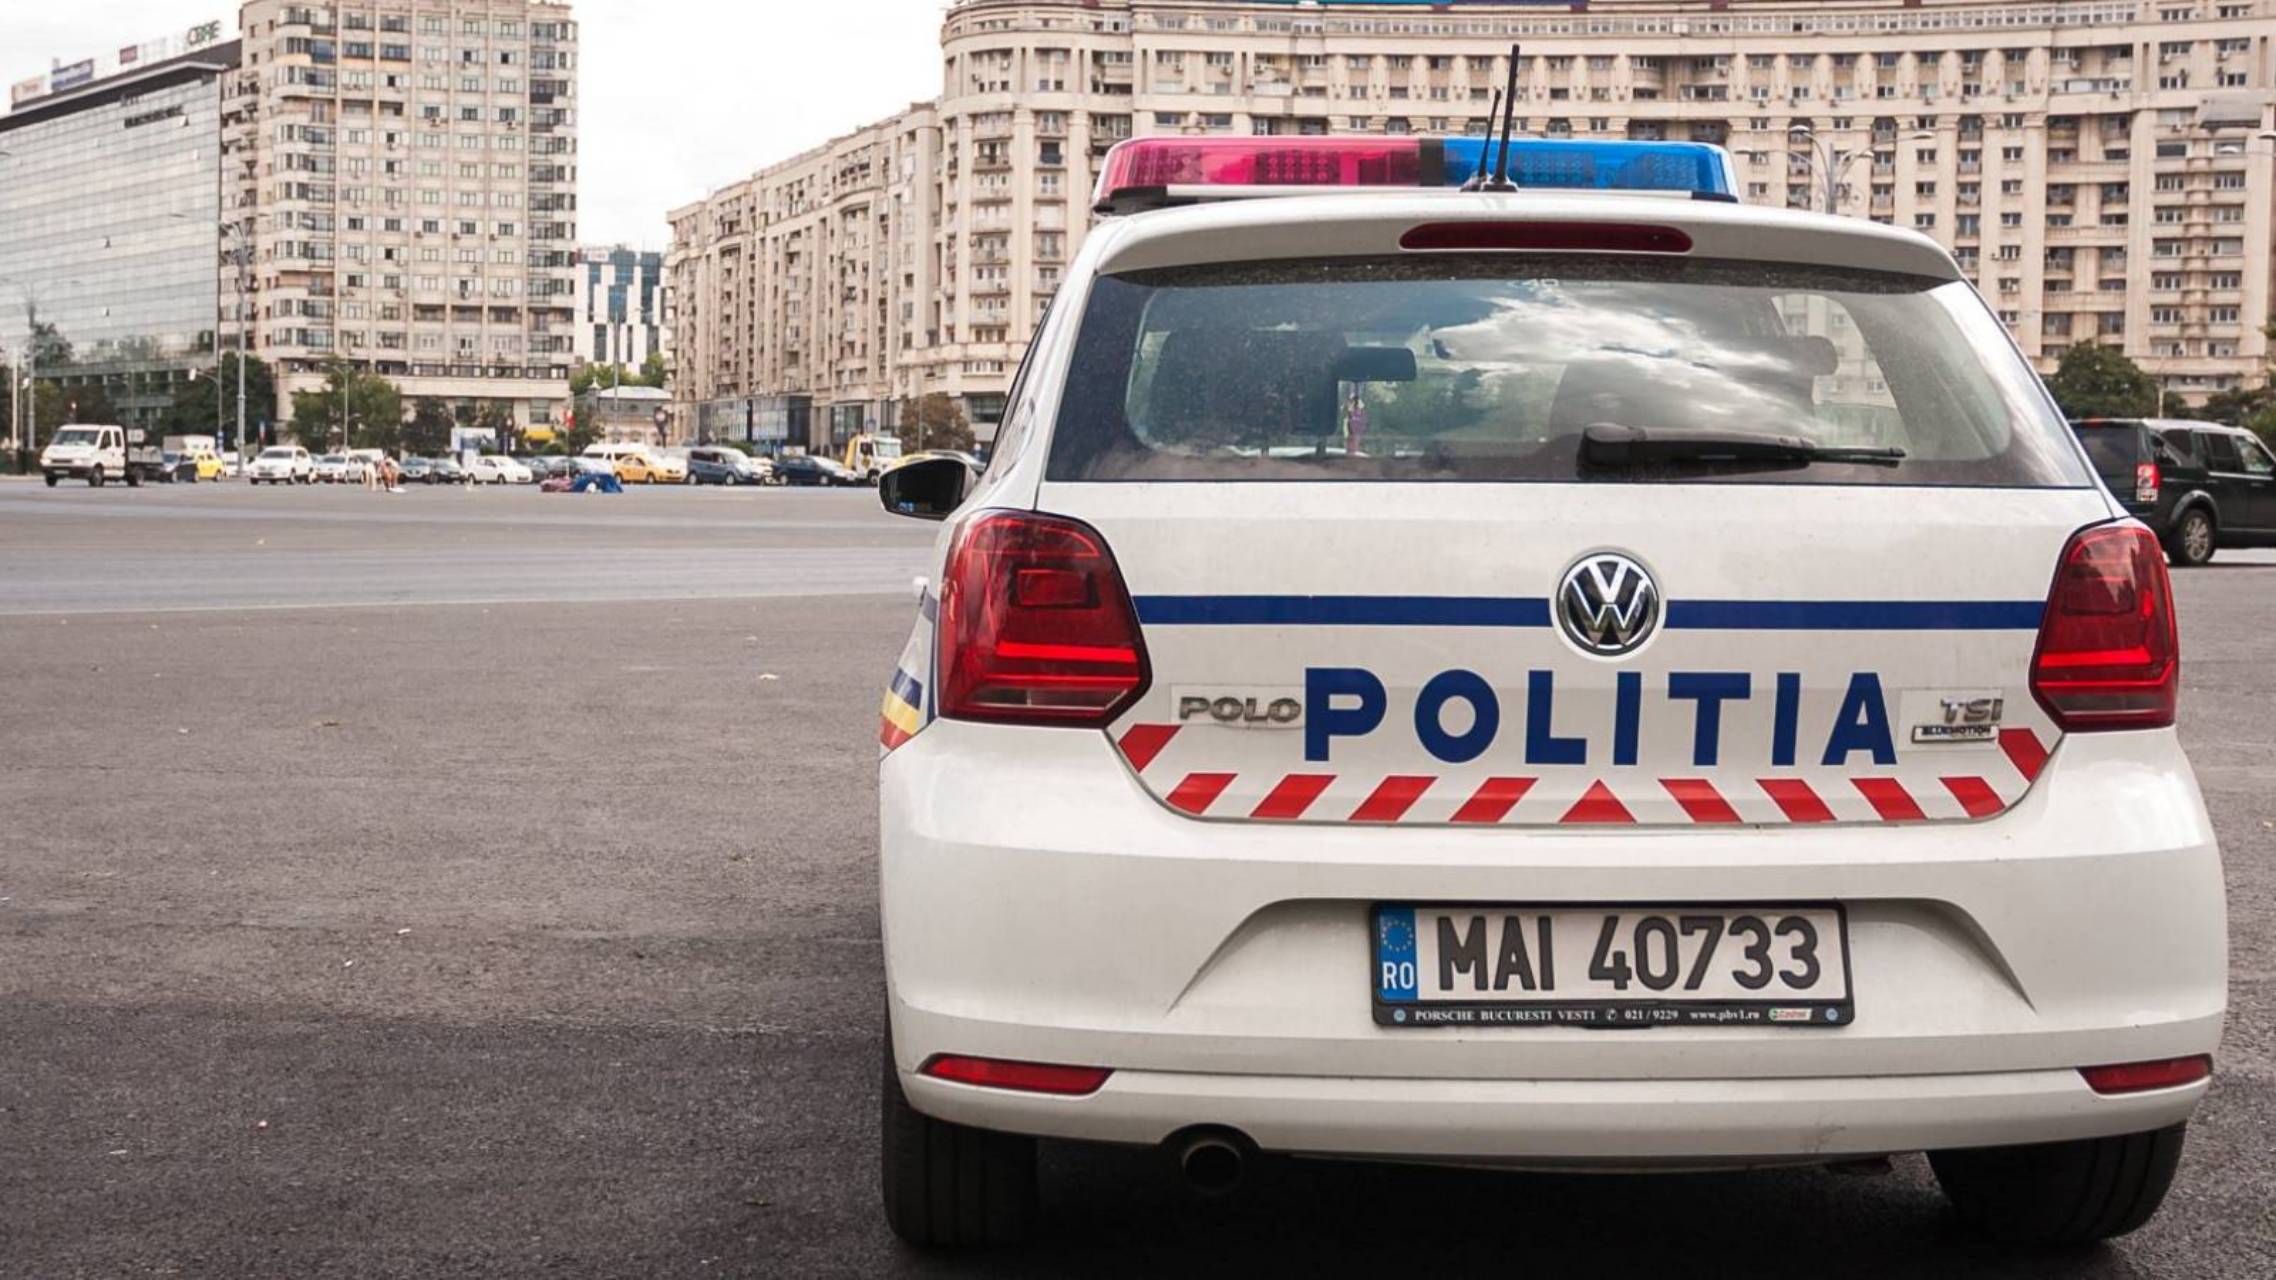 Police roumaine MILLIONS de Roumains